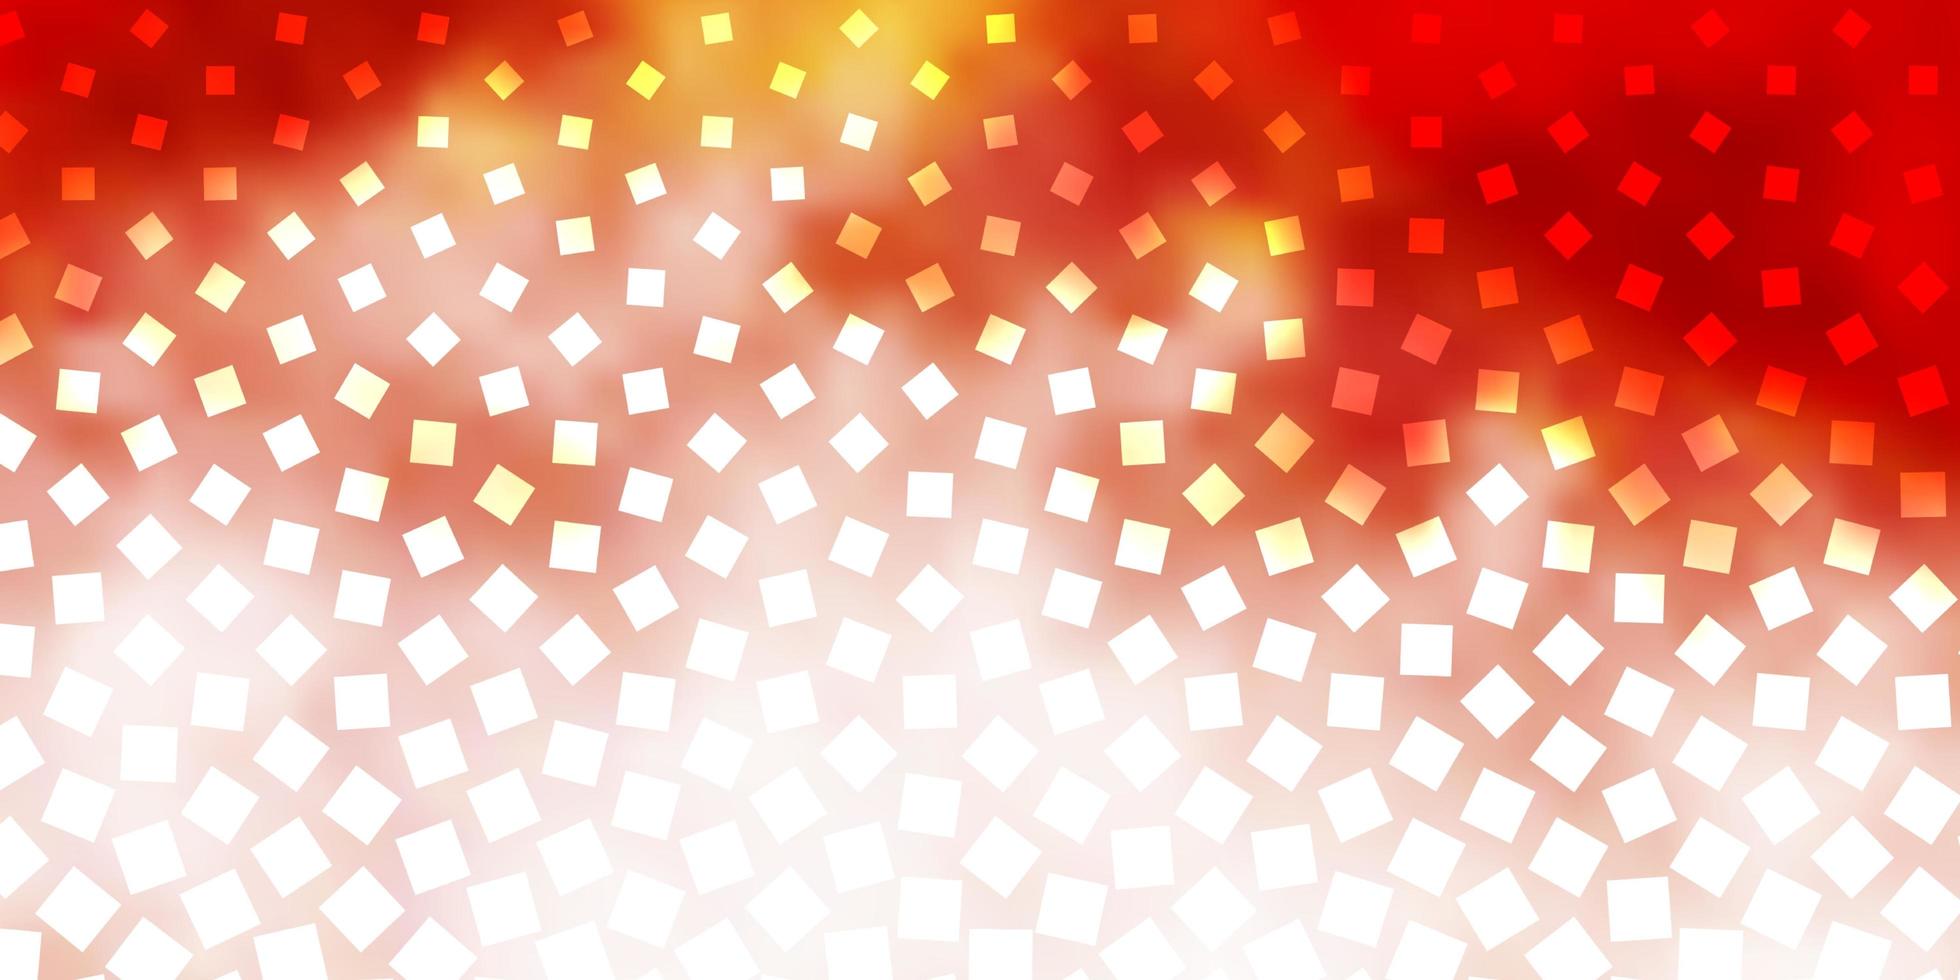 ljusröd vektorlayout med linjer rektanglar abstrakt lutning illustration med färgglada rektanglar mönster för affärshäften broschyrer vektor